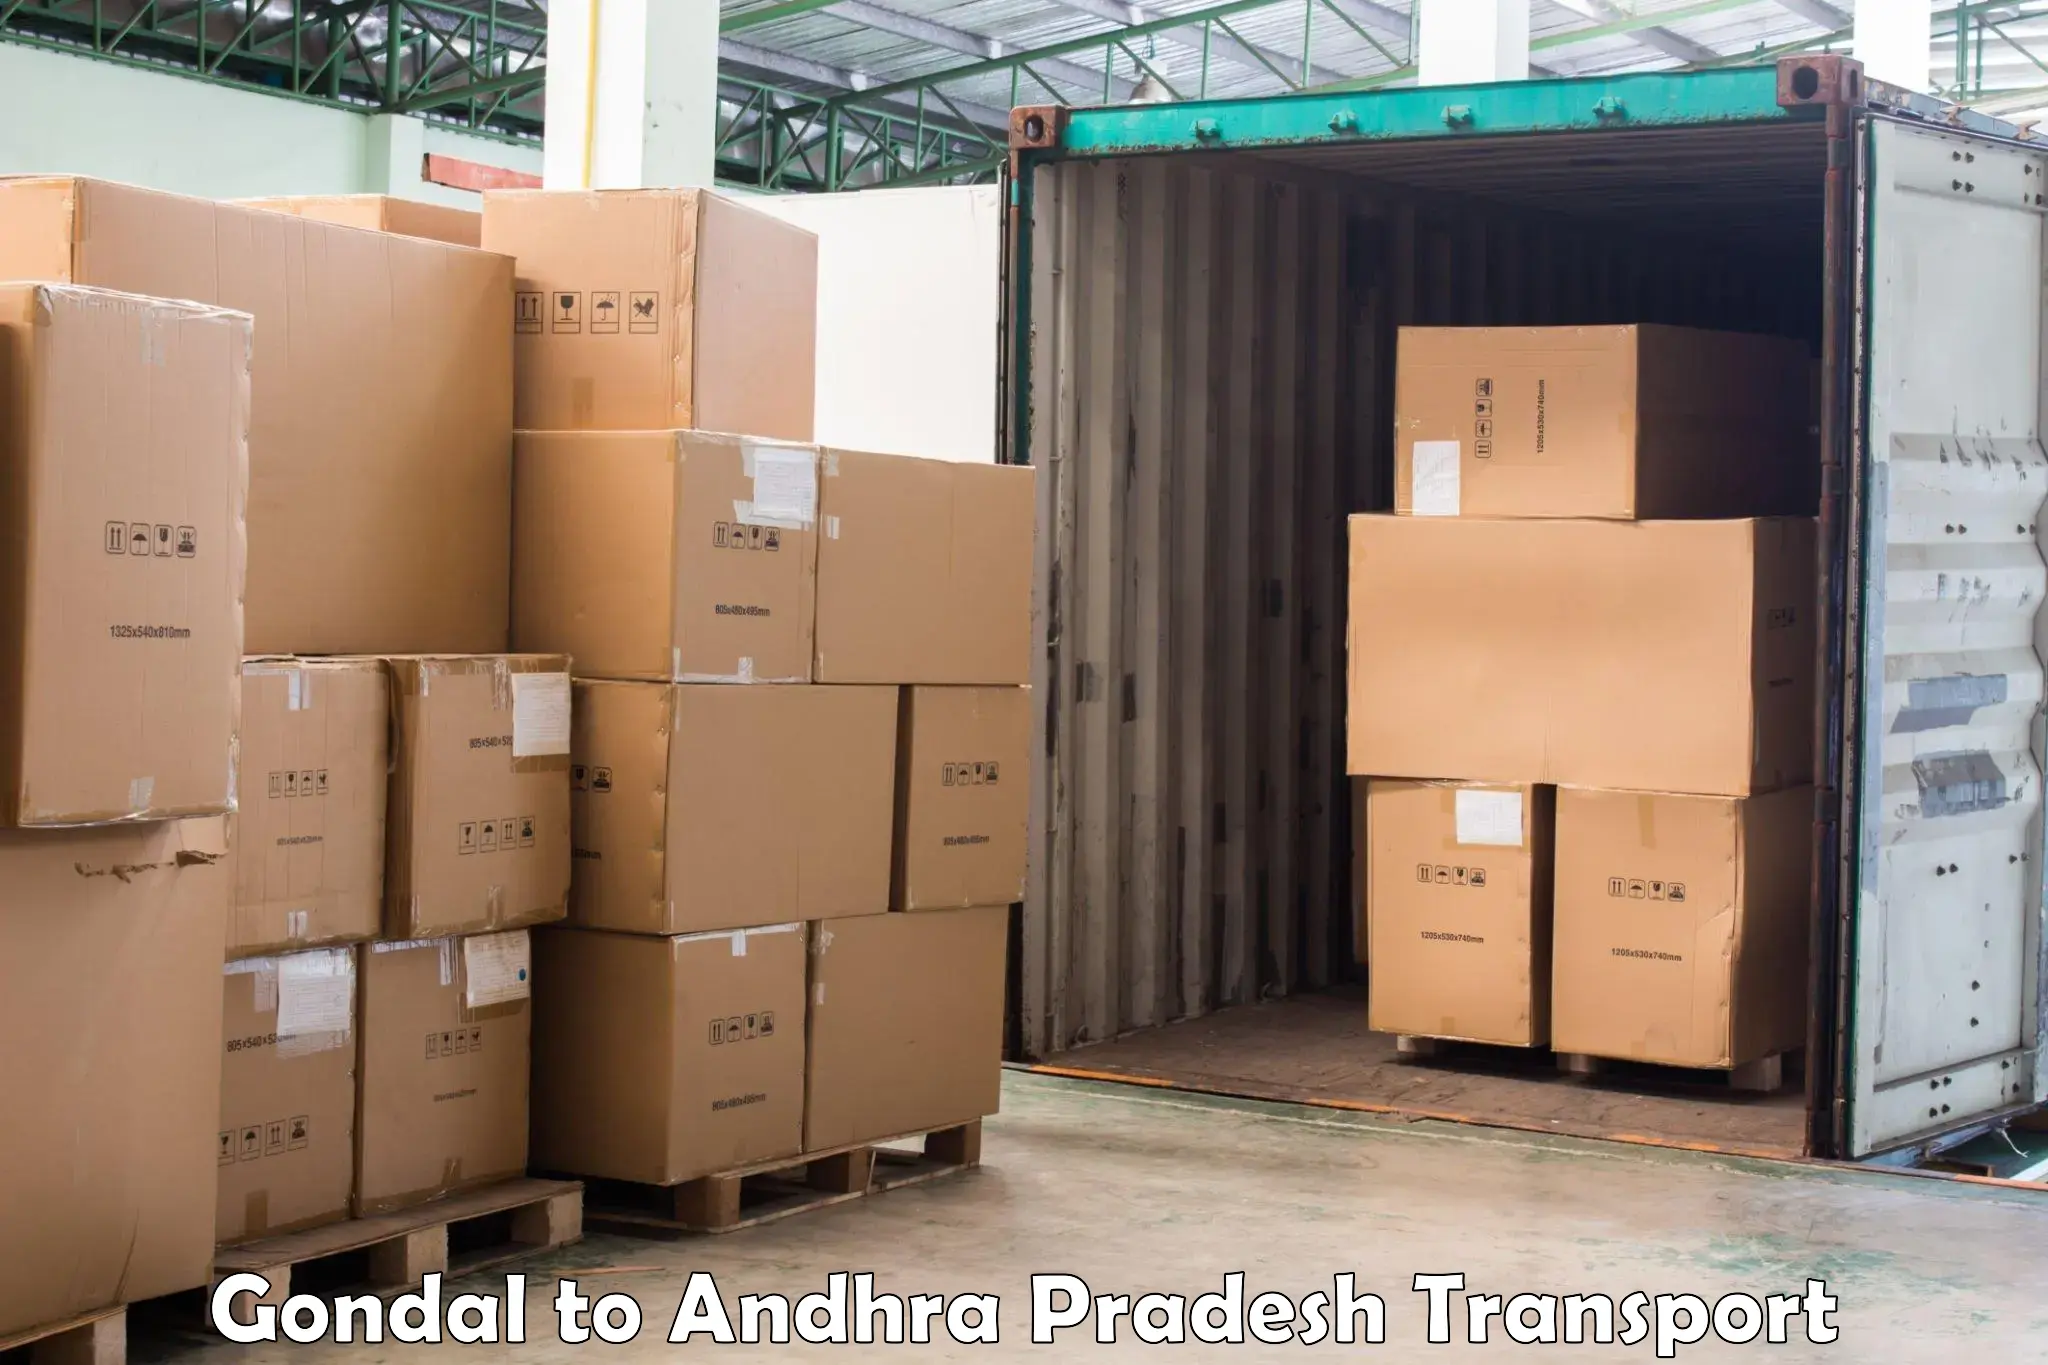 Transport shared services Gondal to Tirupati